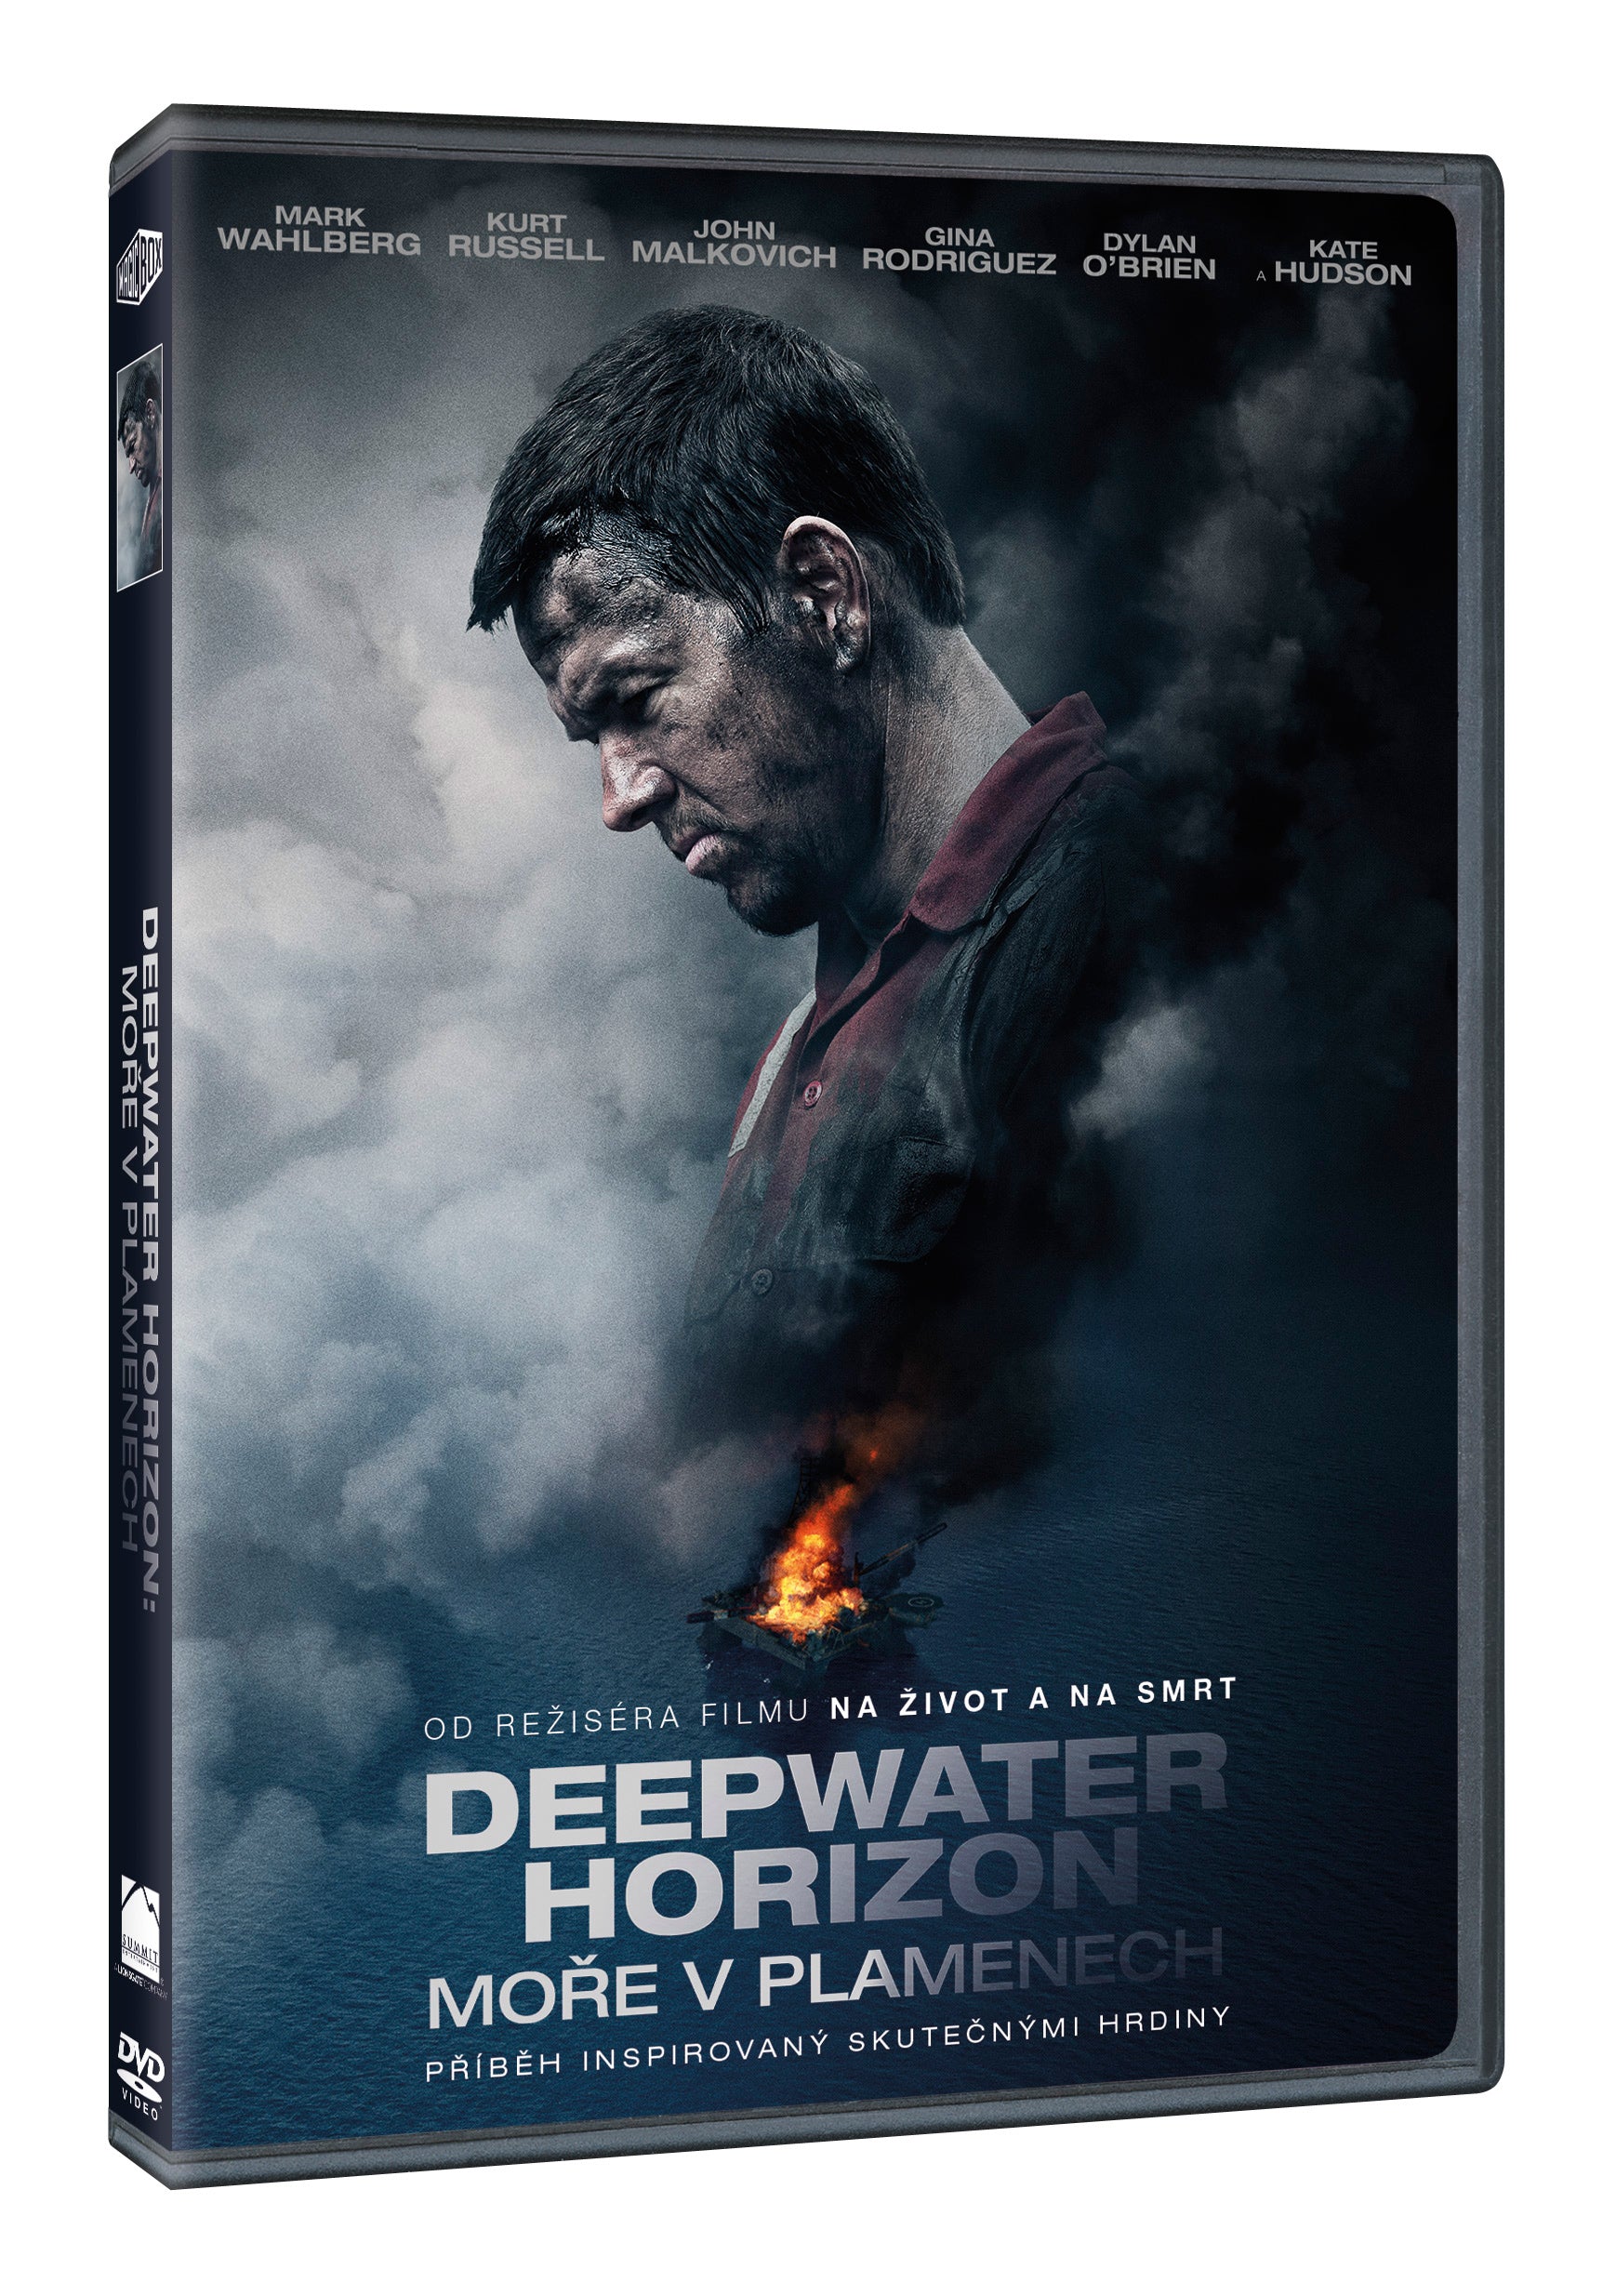 Deepwater Horizon: More v plamenech DVD / Deepwater Horizon